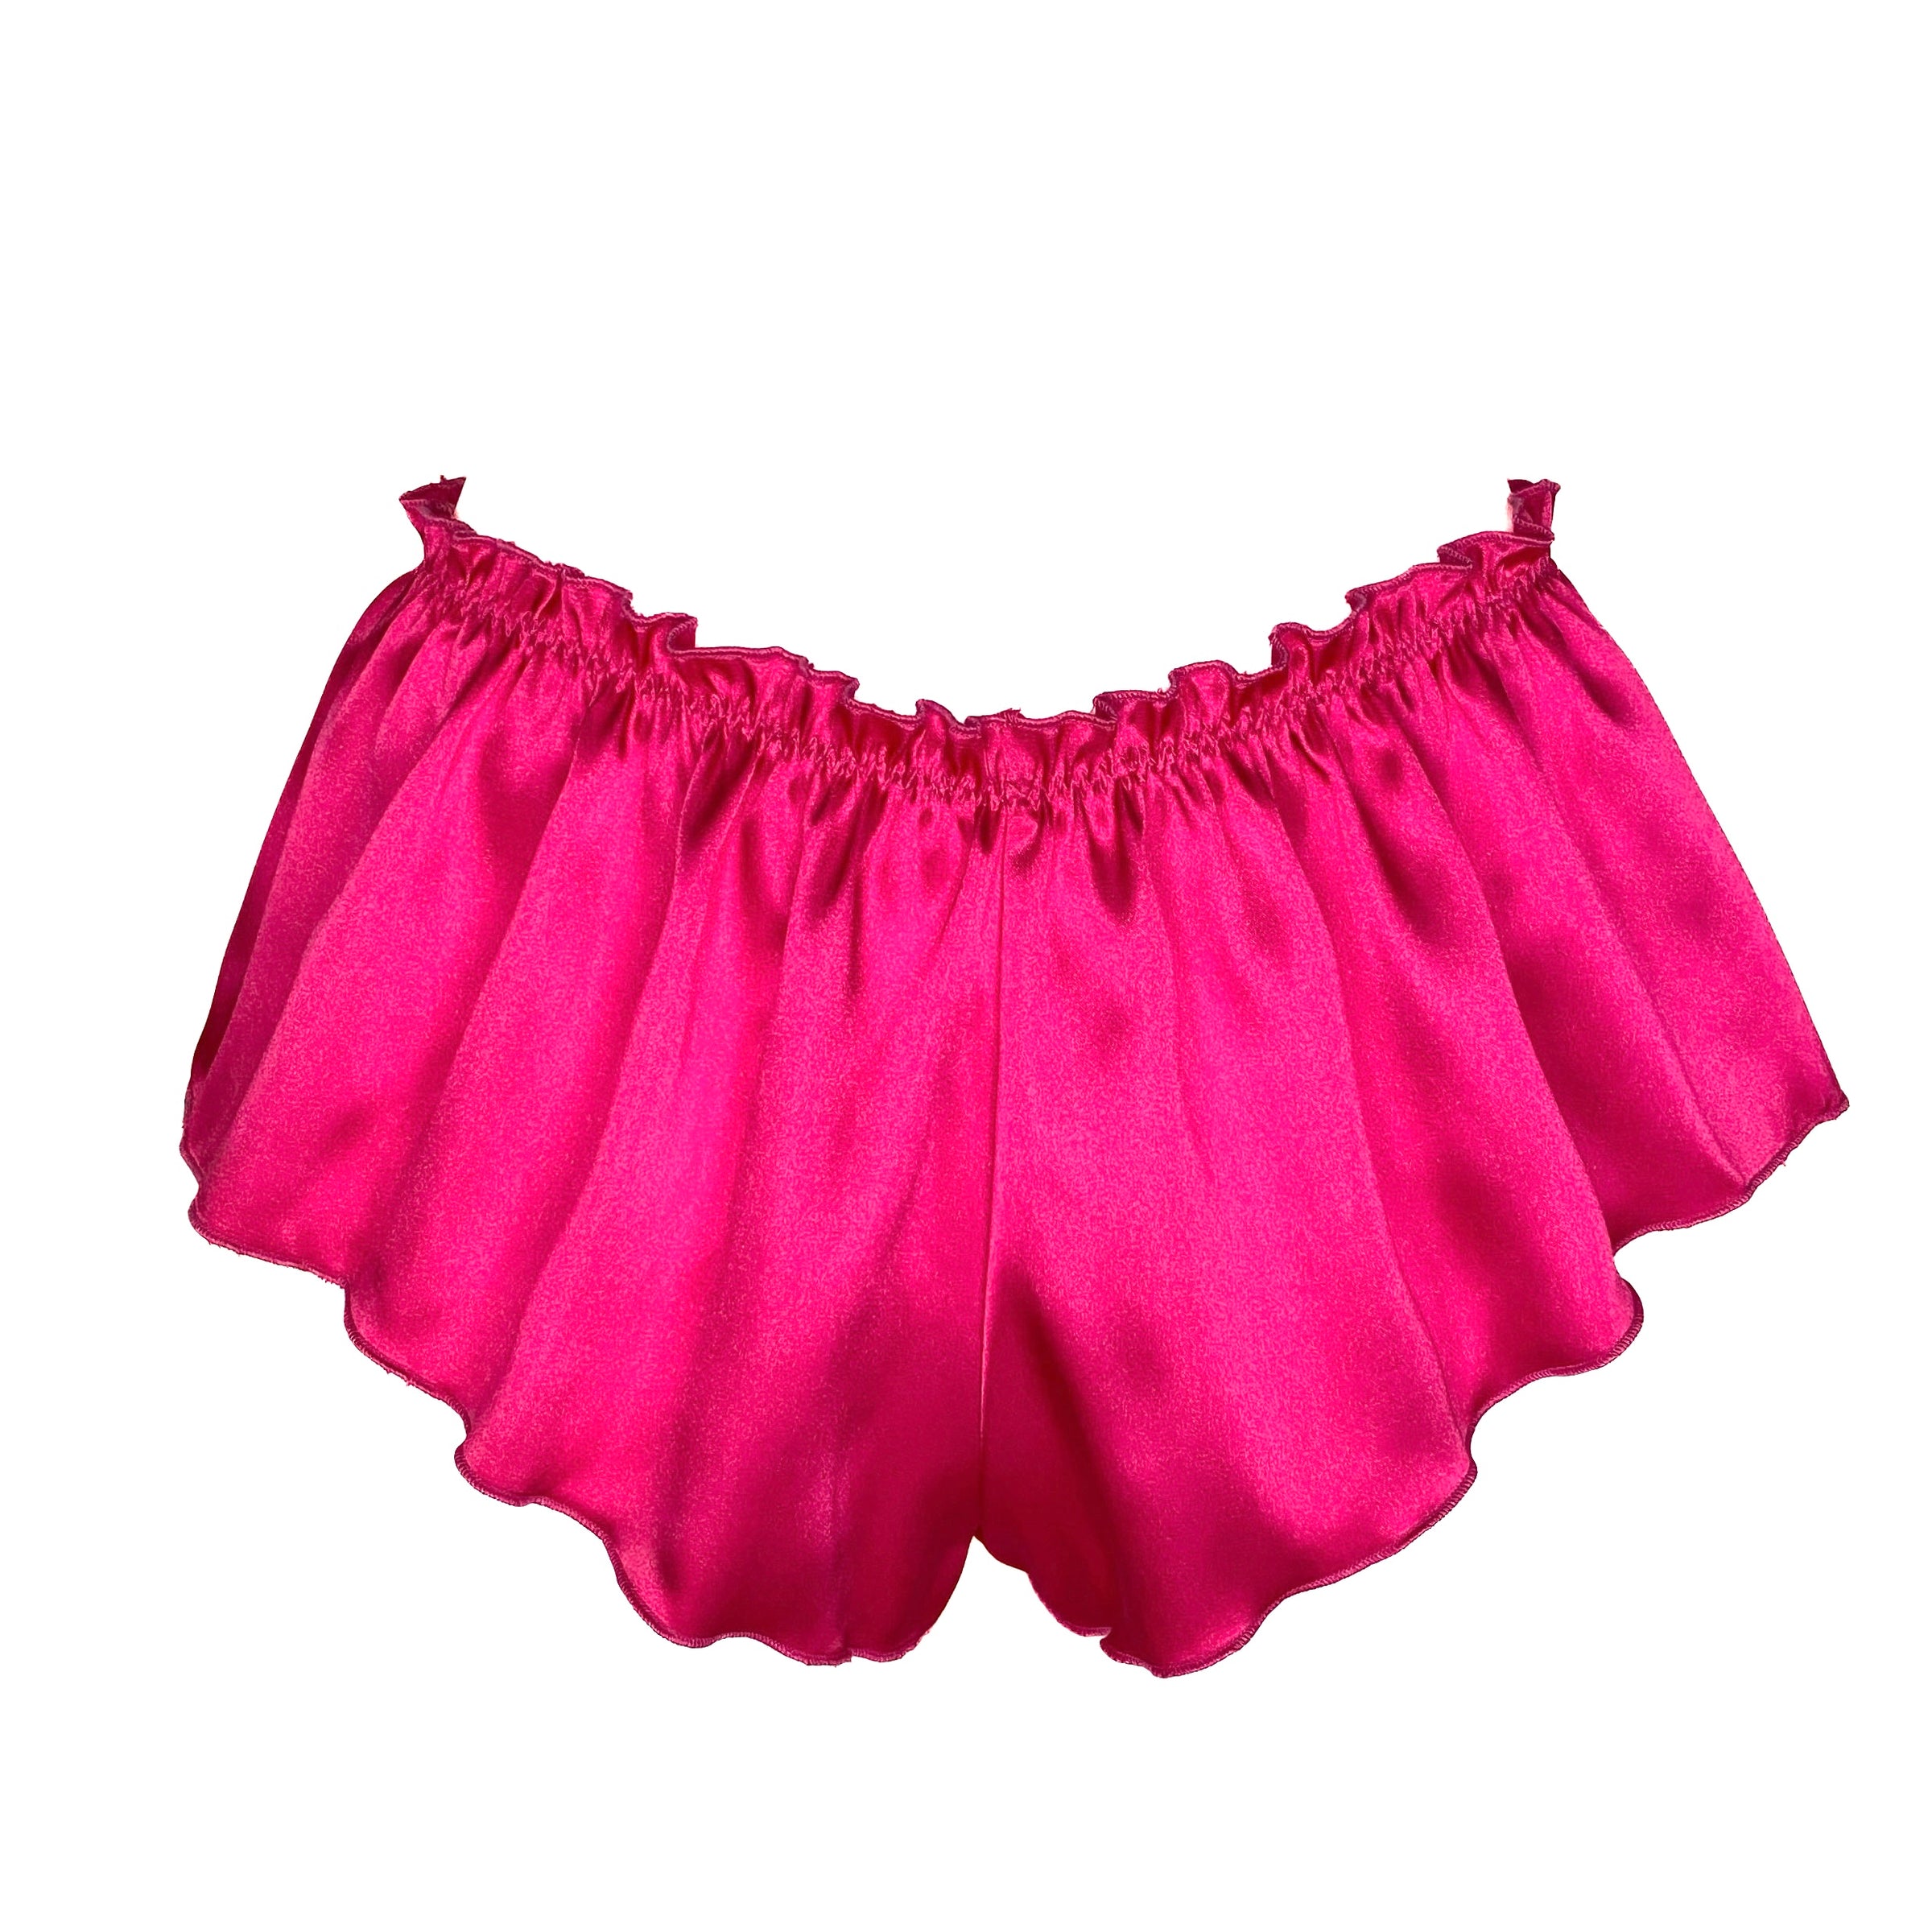 Classic French Knicker - Hot Pink Lingerie, Sleepwear & Loungewear  Desvalido Australia